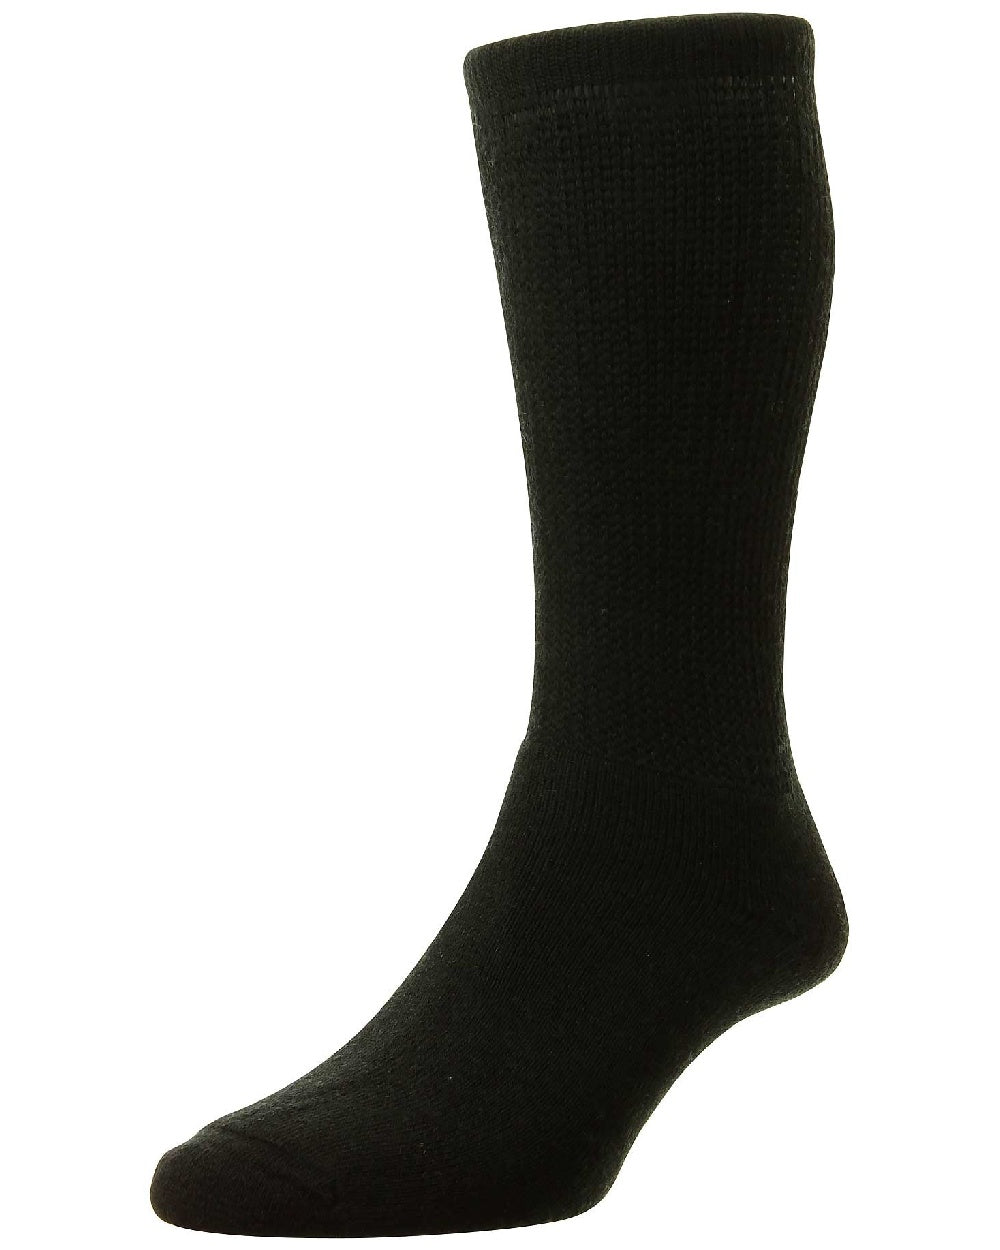 HJ Hall Diabetic Wool Socks in Black 